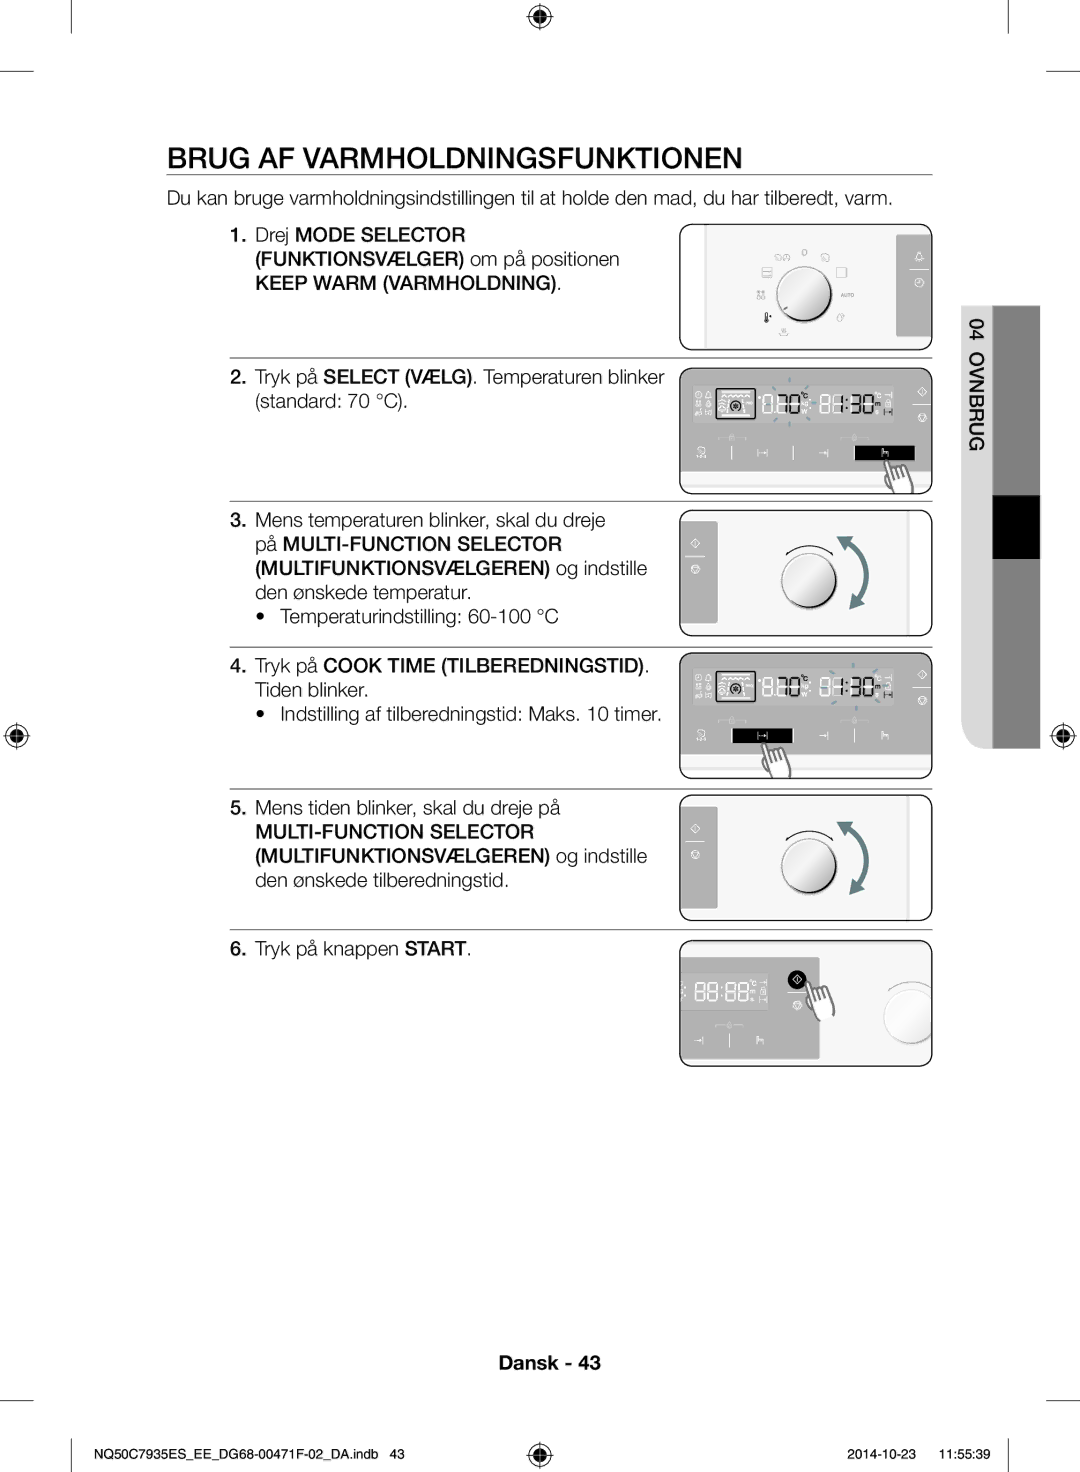 Samsung NQ50C7935ES/EE manual Brug af varmholdningsfunktionen, Keep Warm Varmholdning 